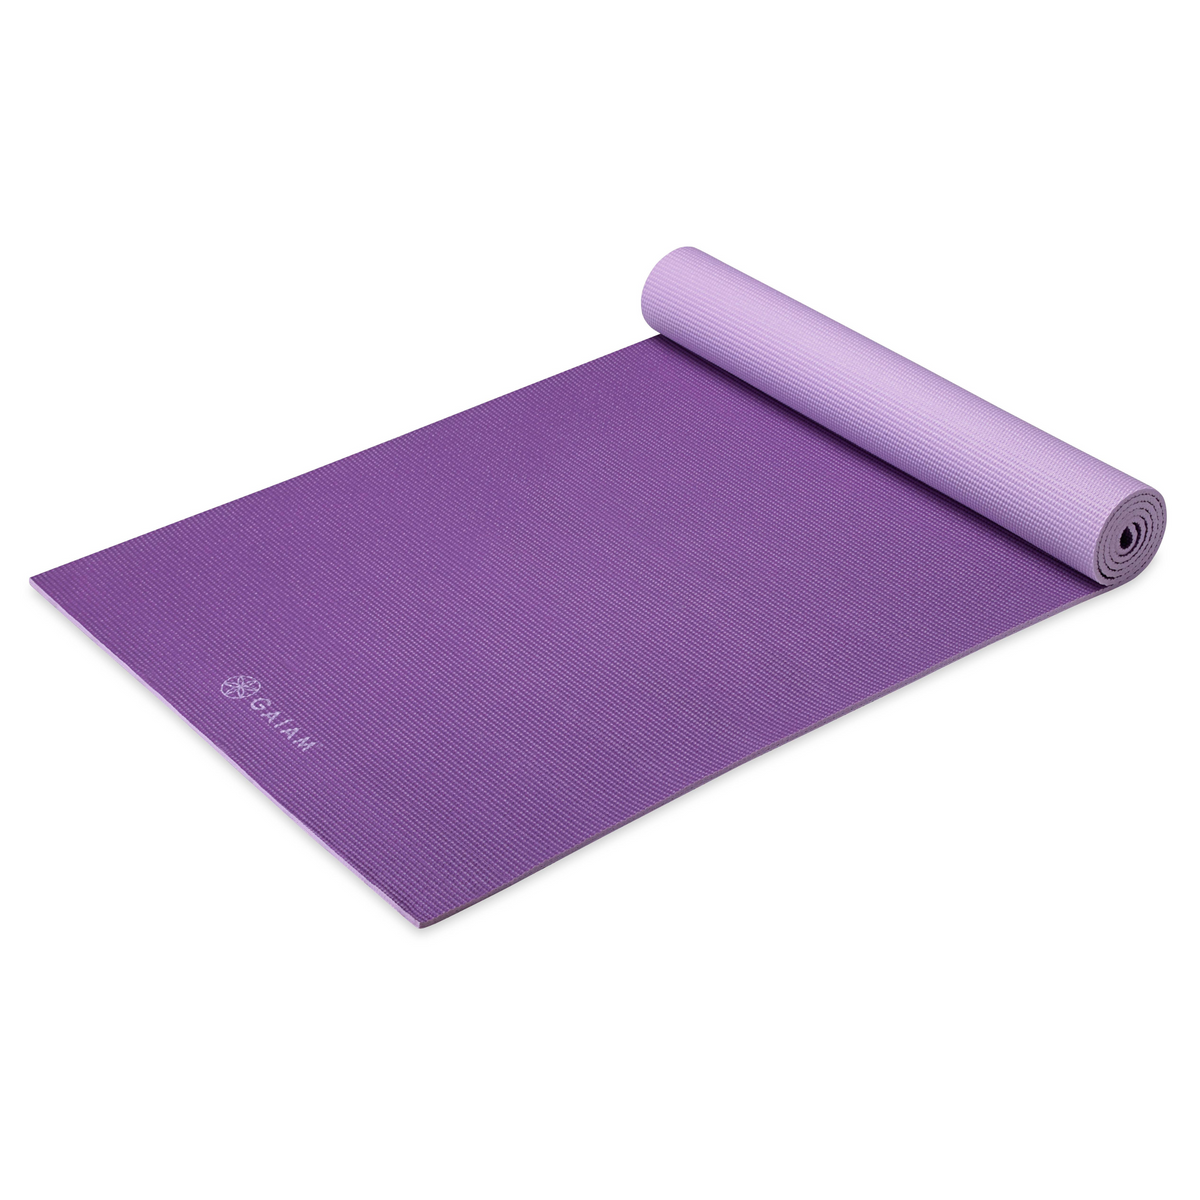 Gaiam Studio Select Premium Yoga Mat, 6mm, PVC, Reversible